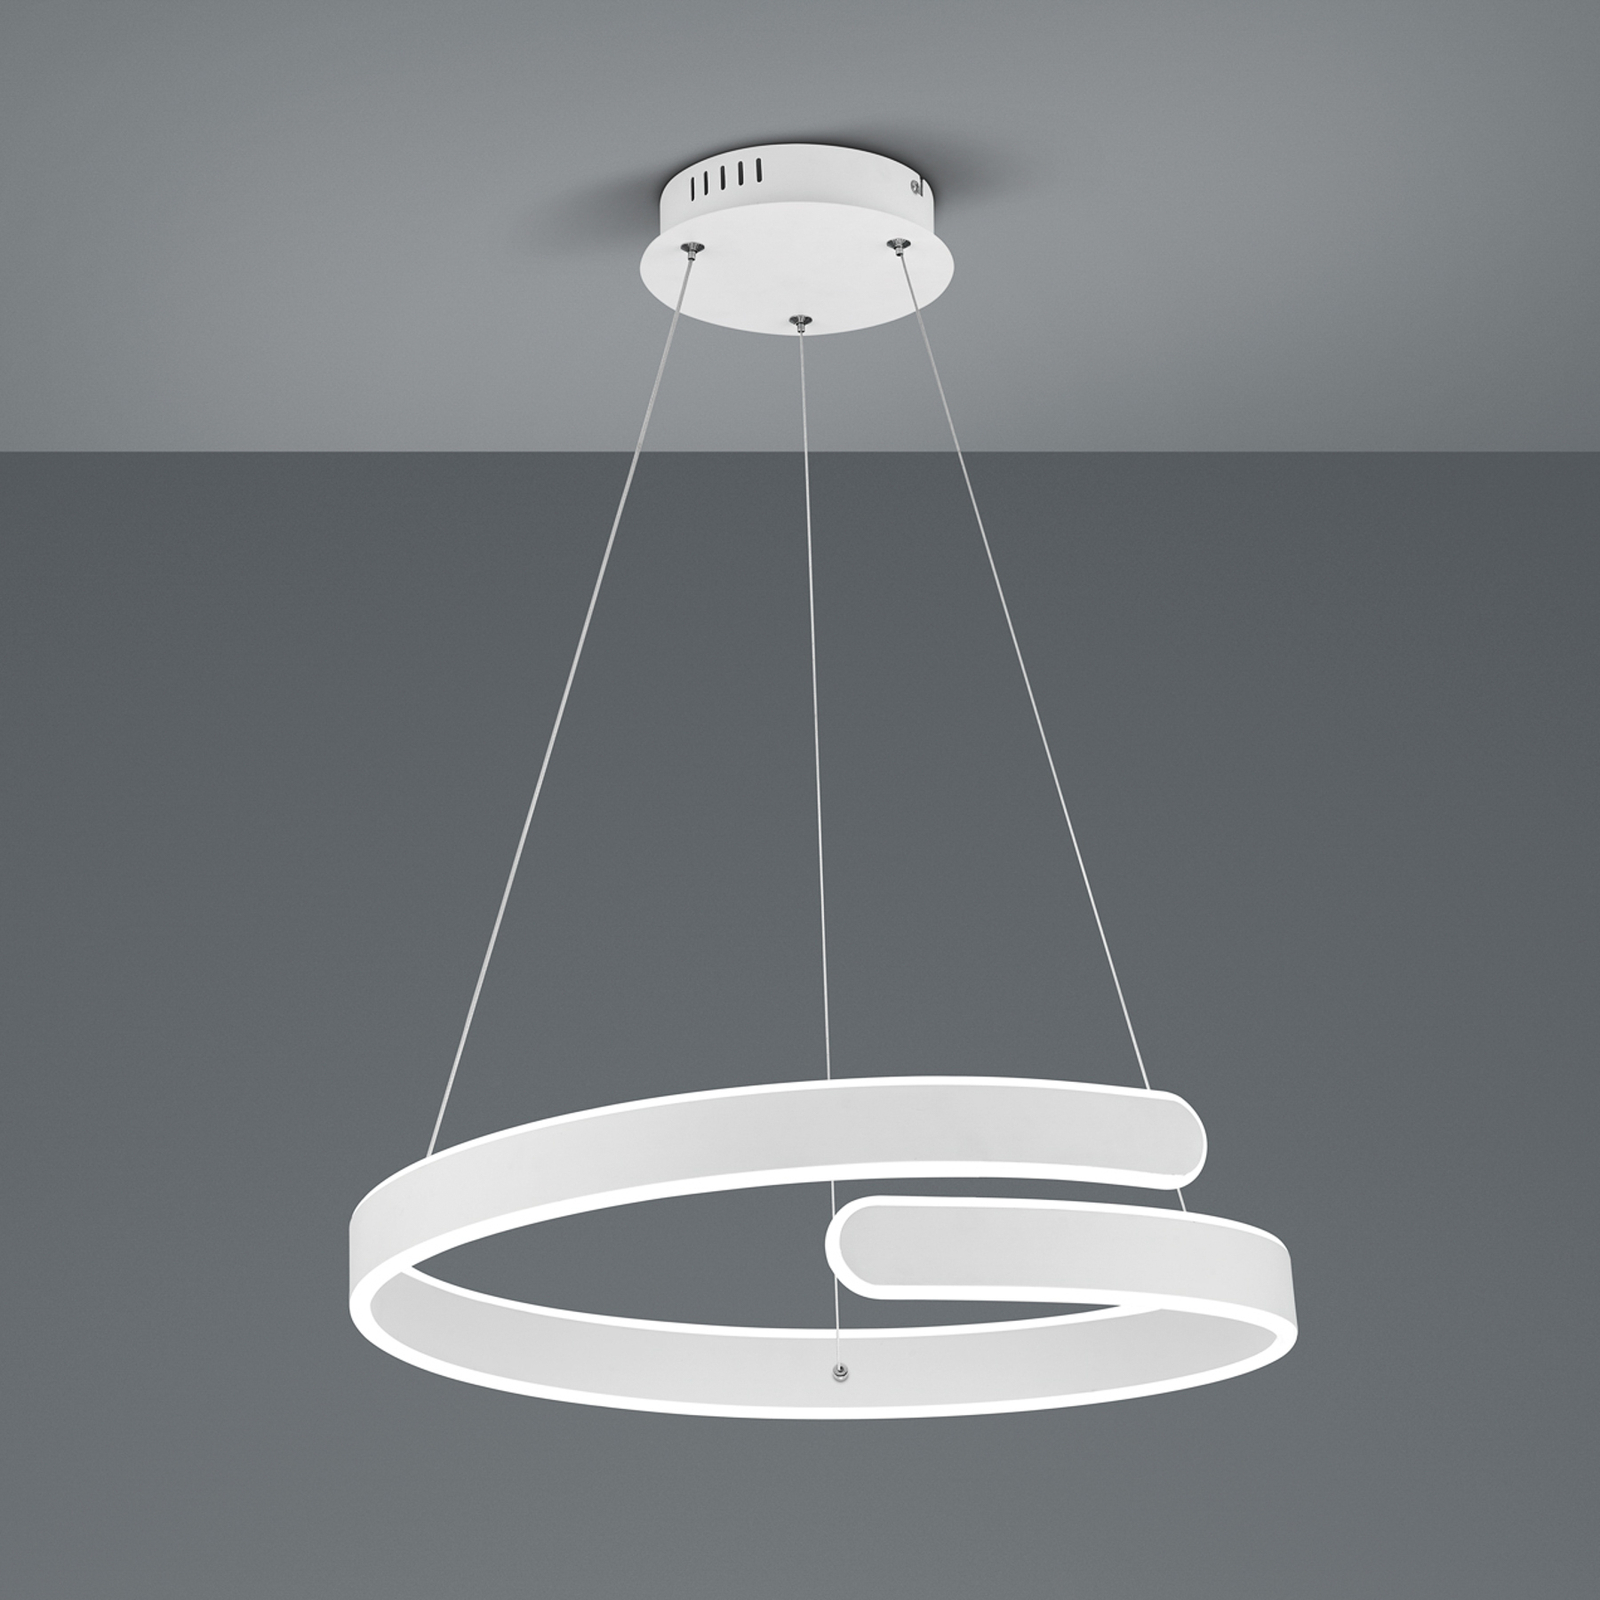 Suspension LED Parma, variateur switch, blanche